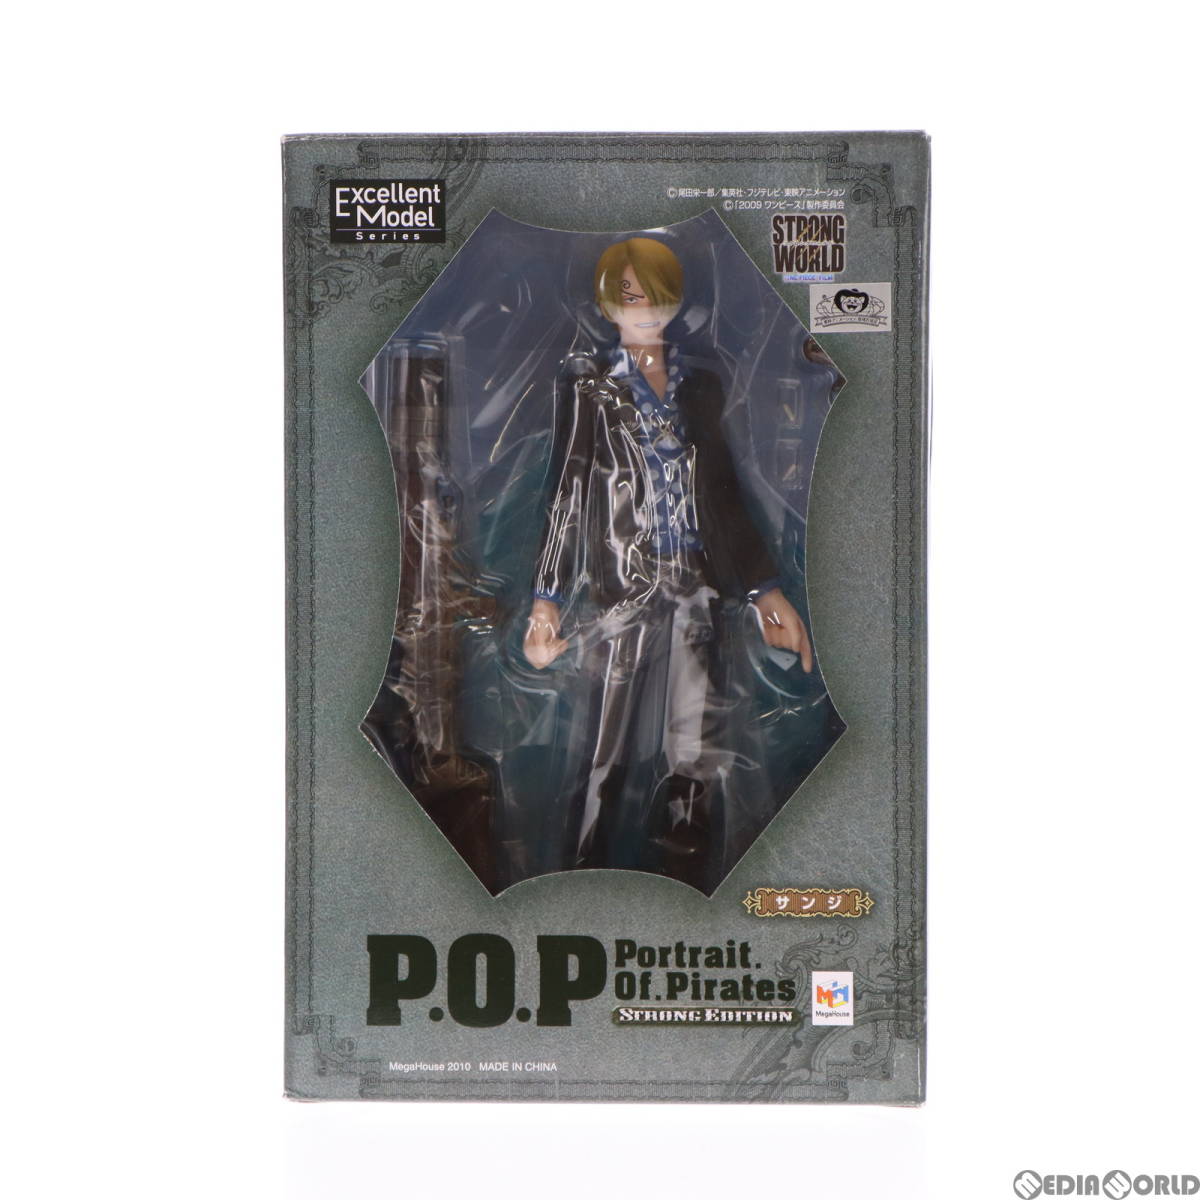 【中古】[FIG]Portrait.Of.Pirates P.O.P STRONG EDITION サンジ ONE PIECE(ワンピース) 1/8 完成品 フィギュア メガハウス(61125642)の画像2